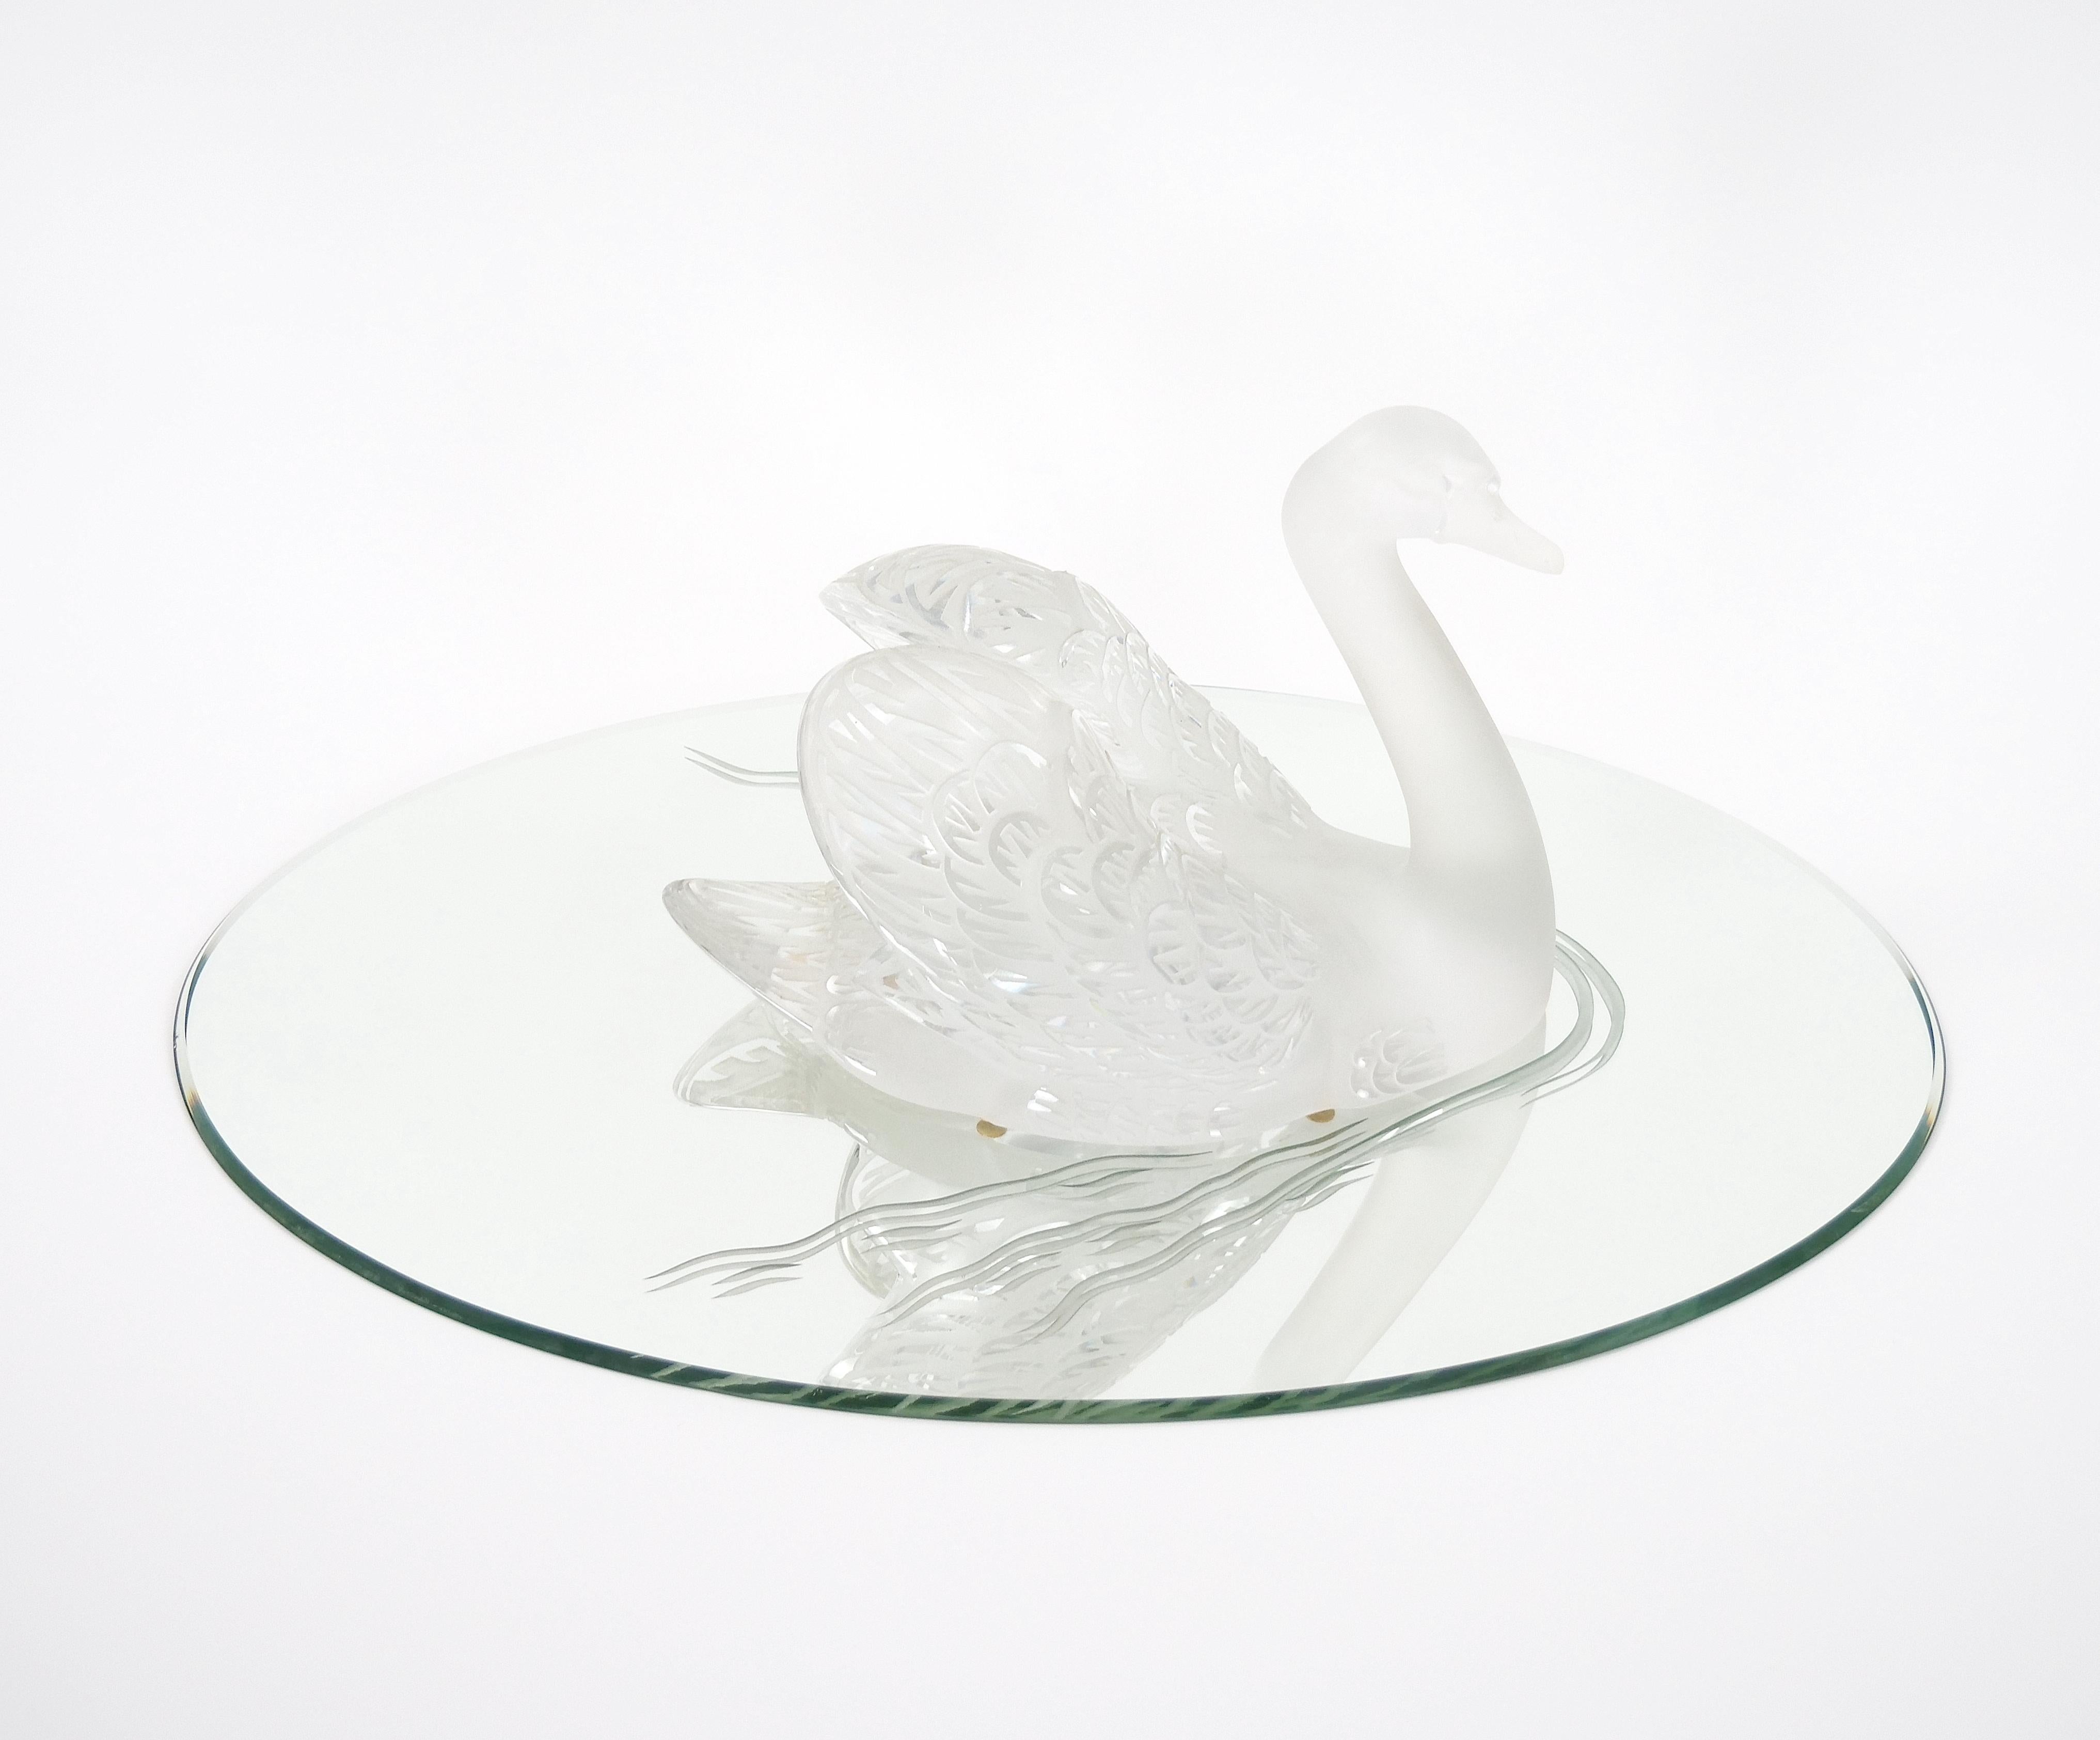 Élevez votre décor avec cette exquise sculpture de cygne givré en cristal de Lalique, élégamment posée avec la tête gracieusement baissée, reposant sur une base ovale ajustée en miroir. Cette sculpture est un véritable chef-d'œuvre d'art et